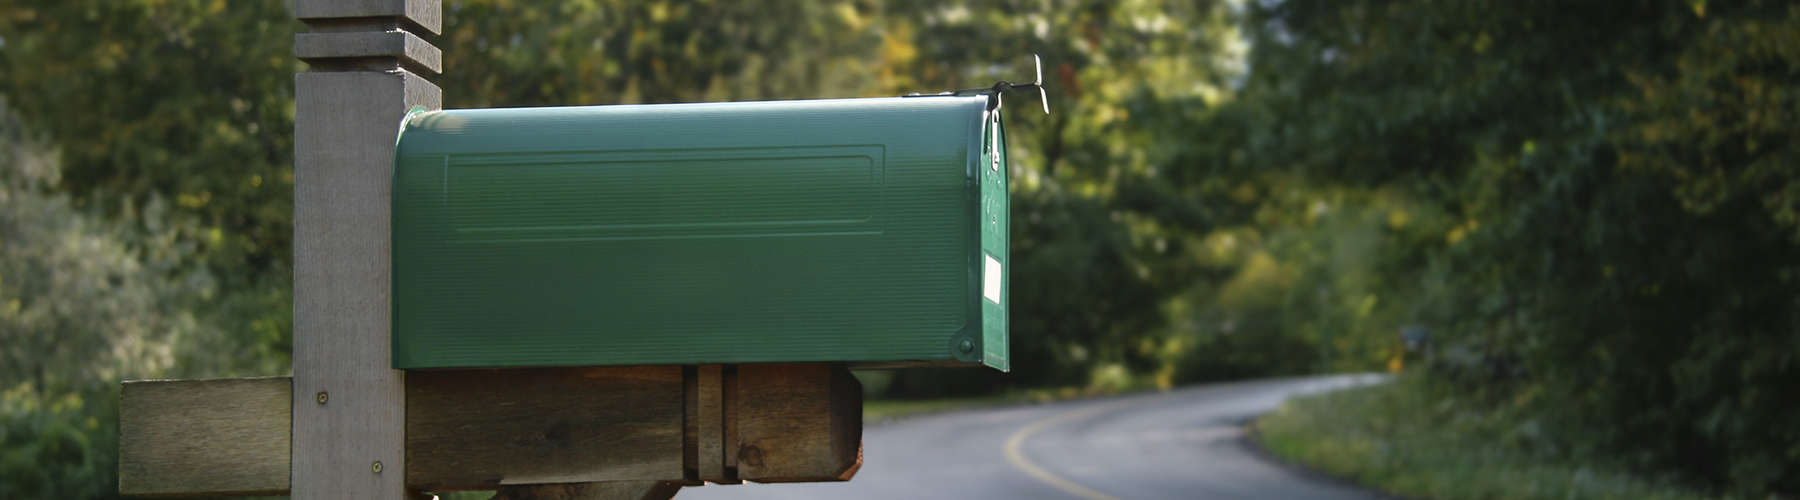 A green mailbox in a rural neighborhood.